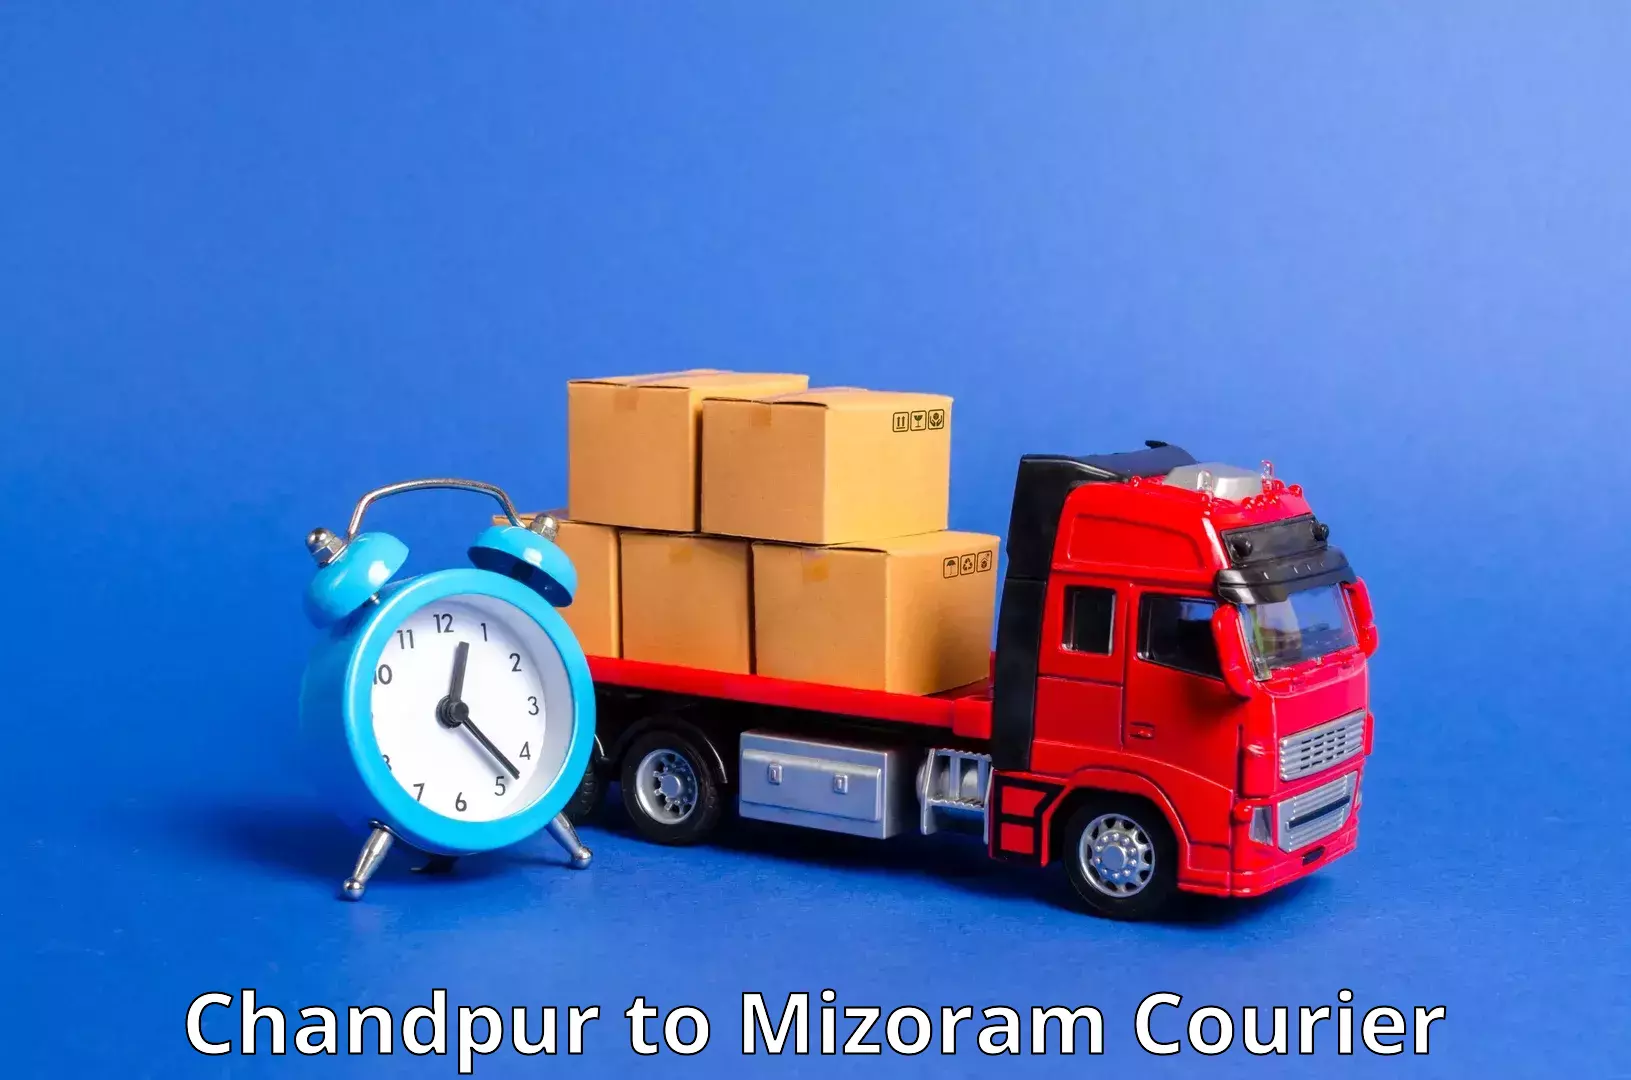 Door-to-door shipment in Chandpur to Darlawn